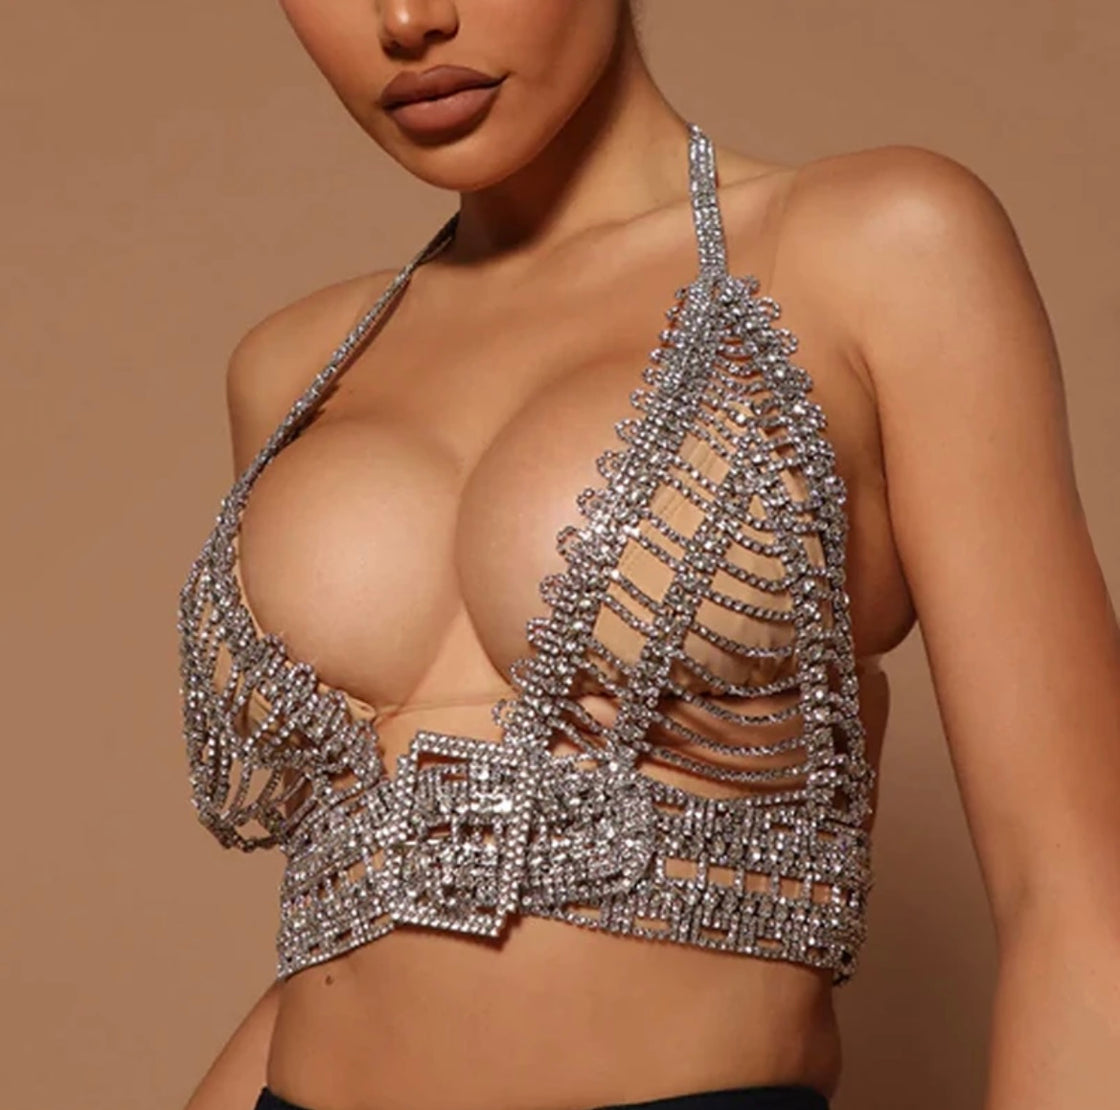 Diamond bra